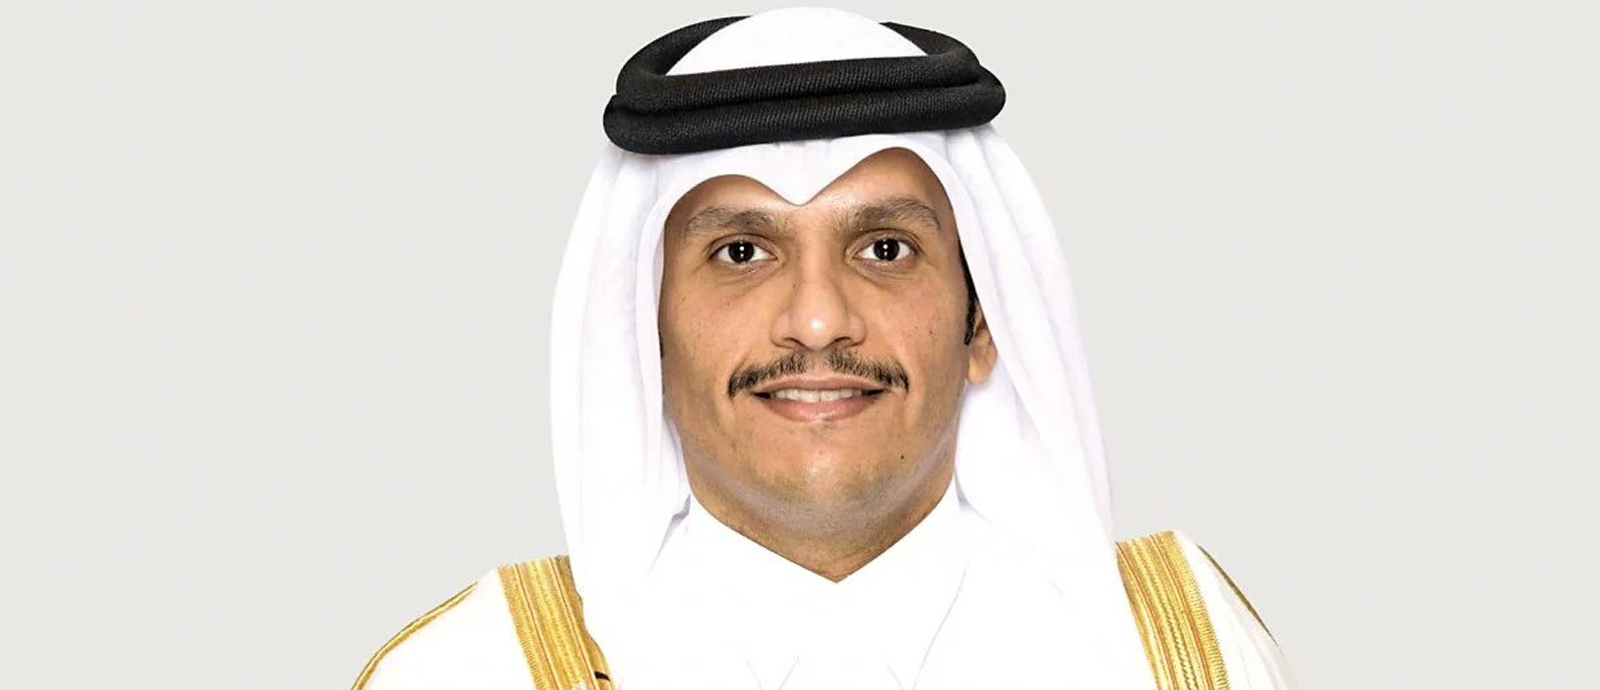  سعادة الشيخ محمد بن عبدالرحمن آل ثاني نائب رئيس مجلس الوزراء وزير الخارجية